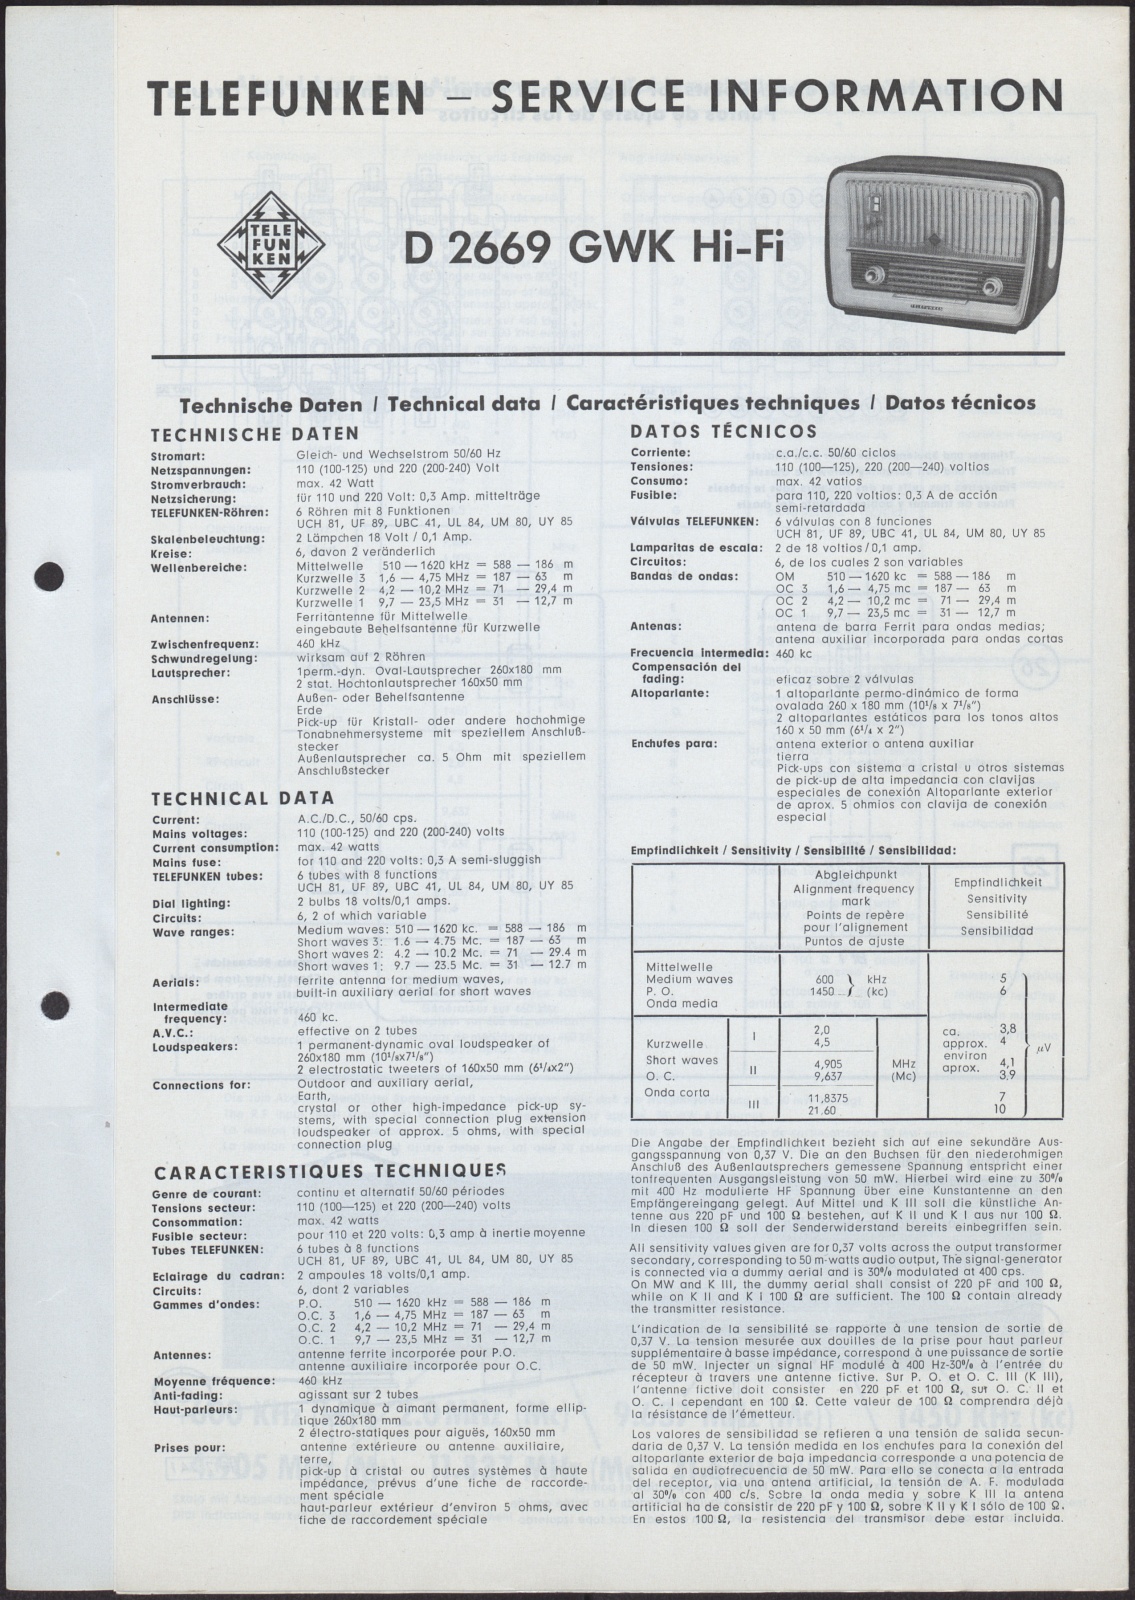 Bedienungsanleitung: Telefunken Service Information D 2669 GWK Hi-Fi (Stiftung Deutsches Technikmuseum Berlin CC0)